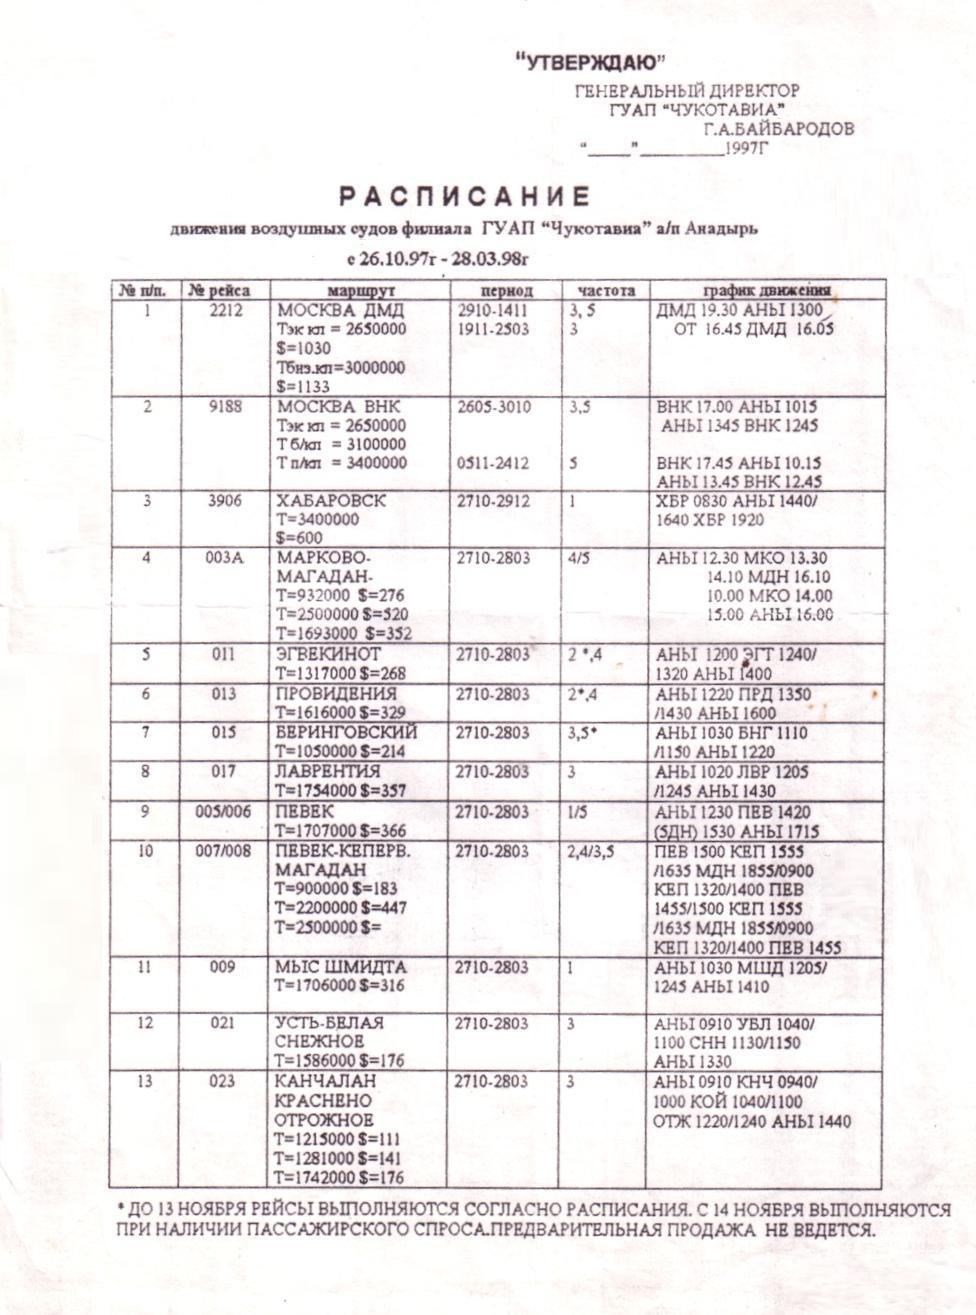 Расписание по аэропорту Анадырь   (1997 год)